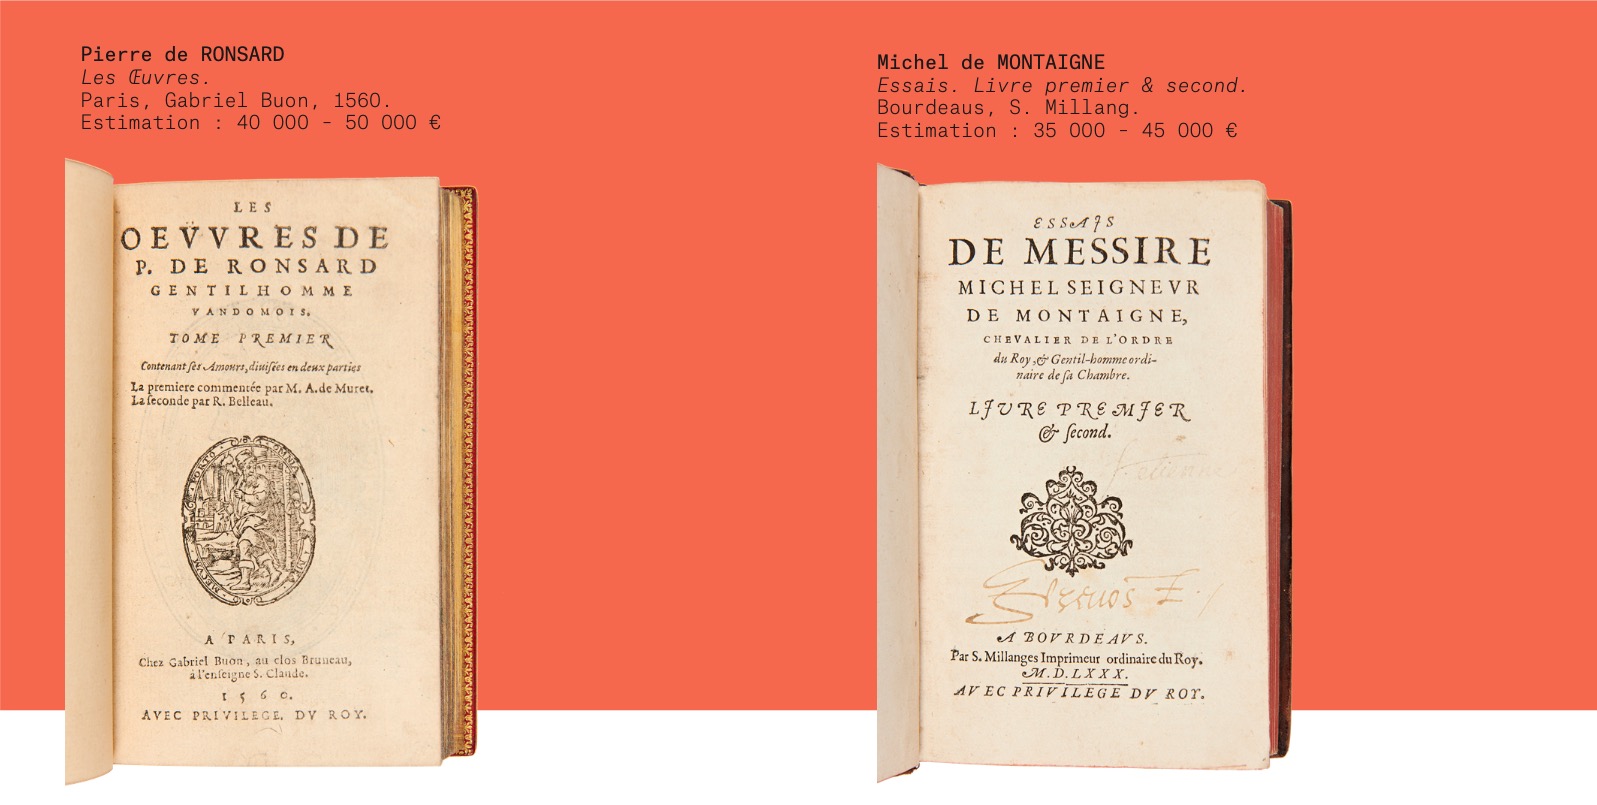 Pierre de Ronsard, Les Œuvres ; Michel de Montaigne, Essais, Livre premier & second. Artcurial.